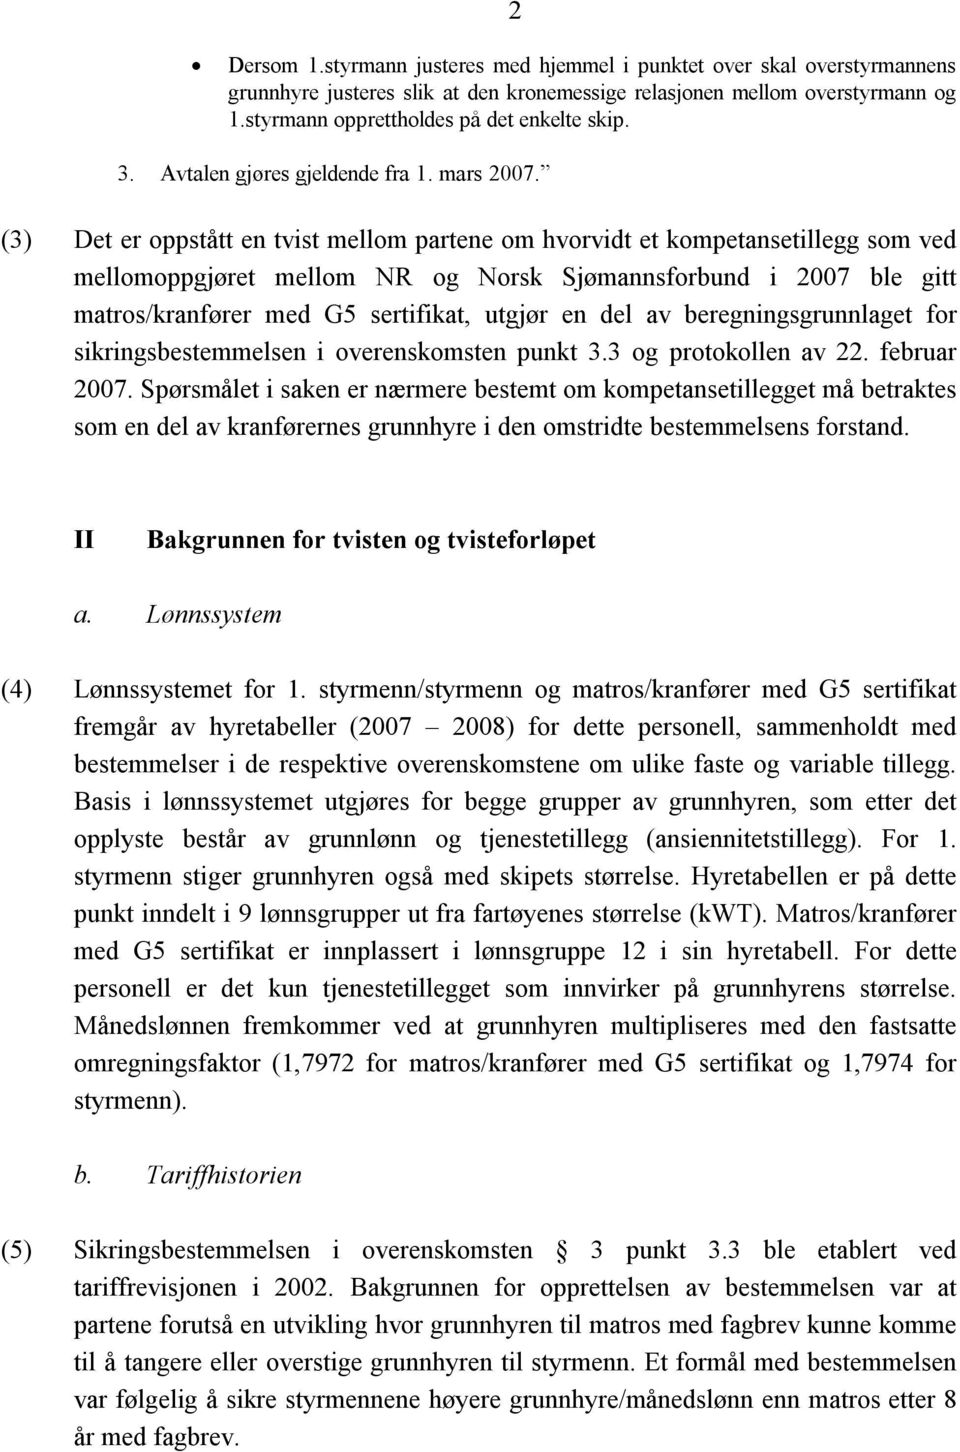 (3) Det er oppstått en tvist mellom partene om hvorvidt et kompetansetillegg som ved mellomoppgjøret mellom NR og Norsk Sjømannsforbund i 2007 ble gitt matros/kranfører med G5 sertifikat, utgjør en